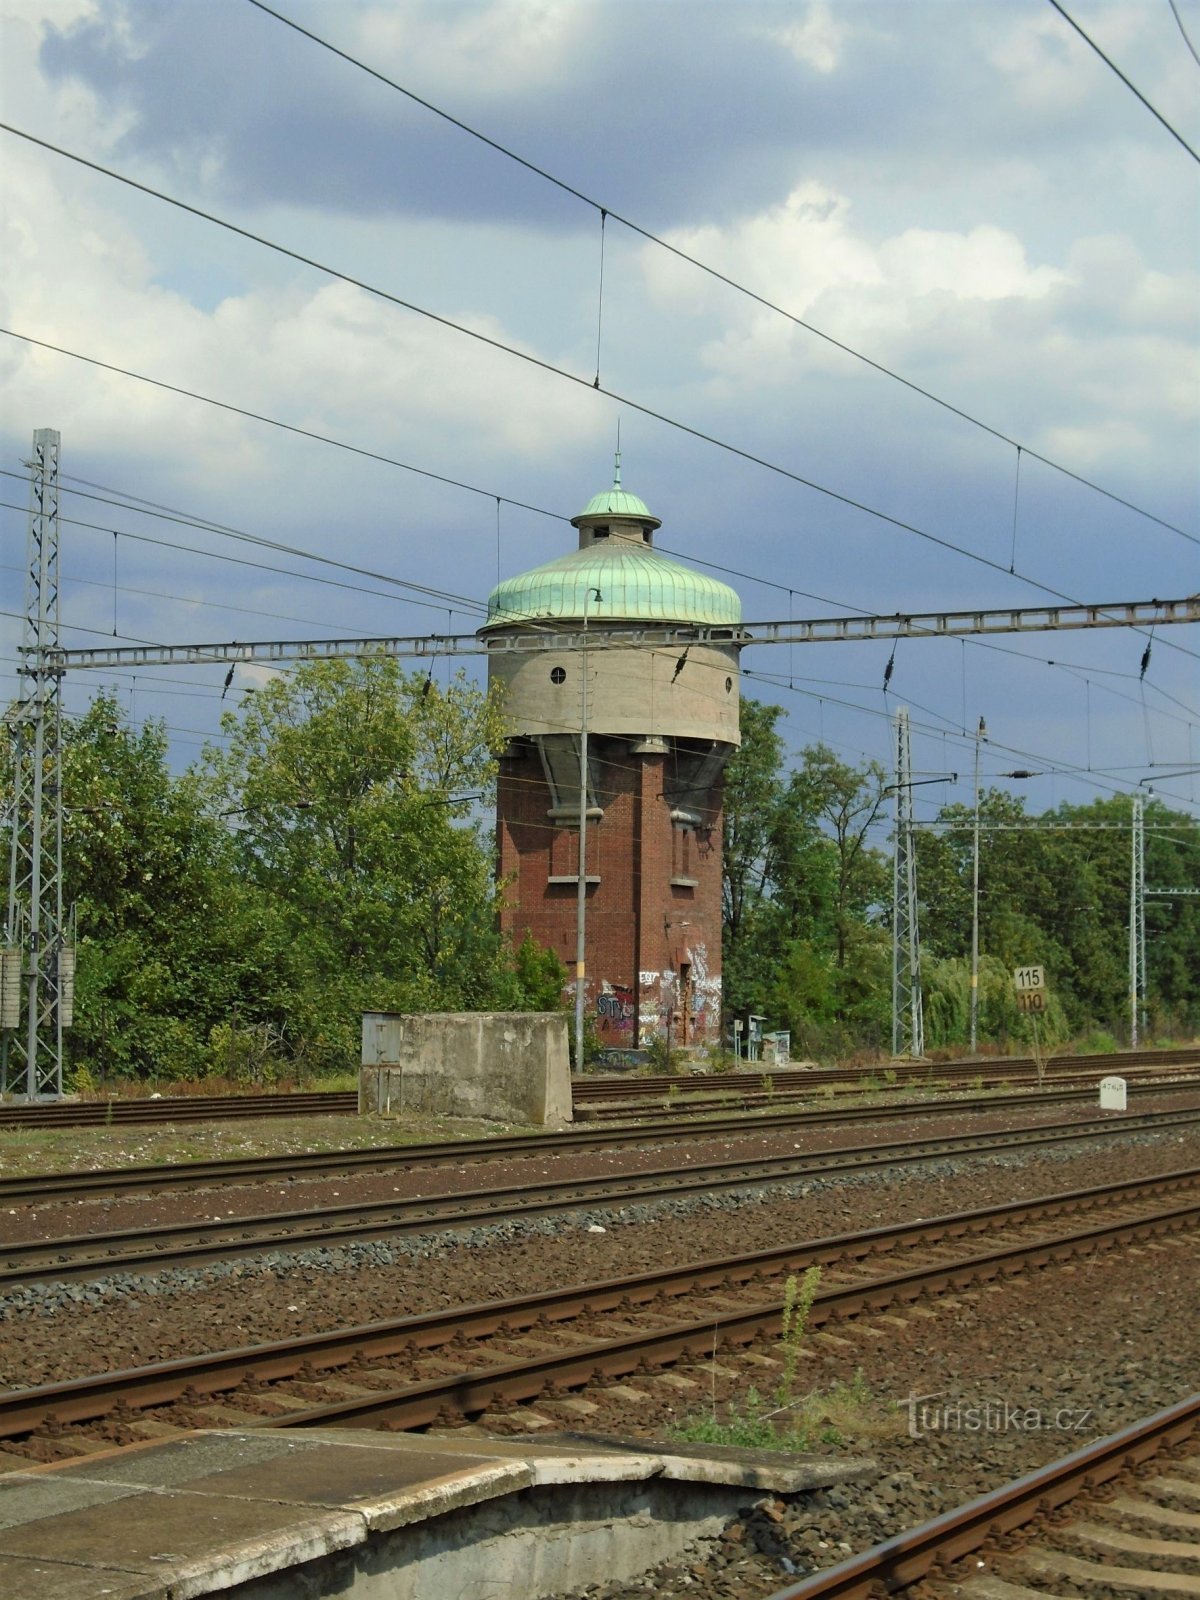 Δεξαμενή πύργου σταθμού (Roudnice nad Labem, 23.7.2018/XNUMX/XNUMX)